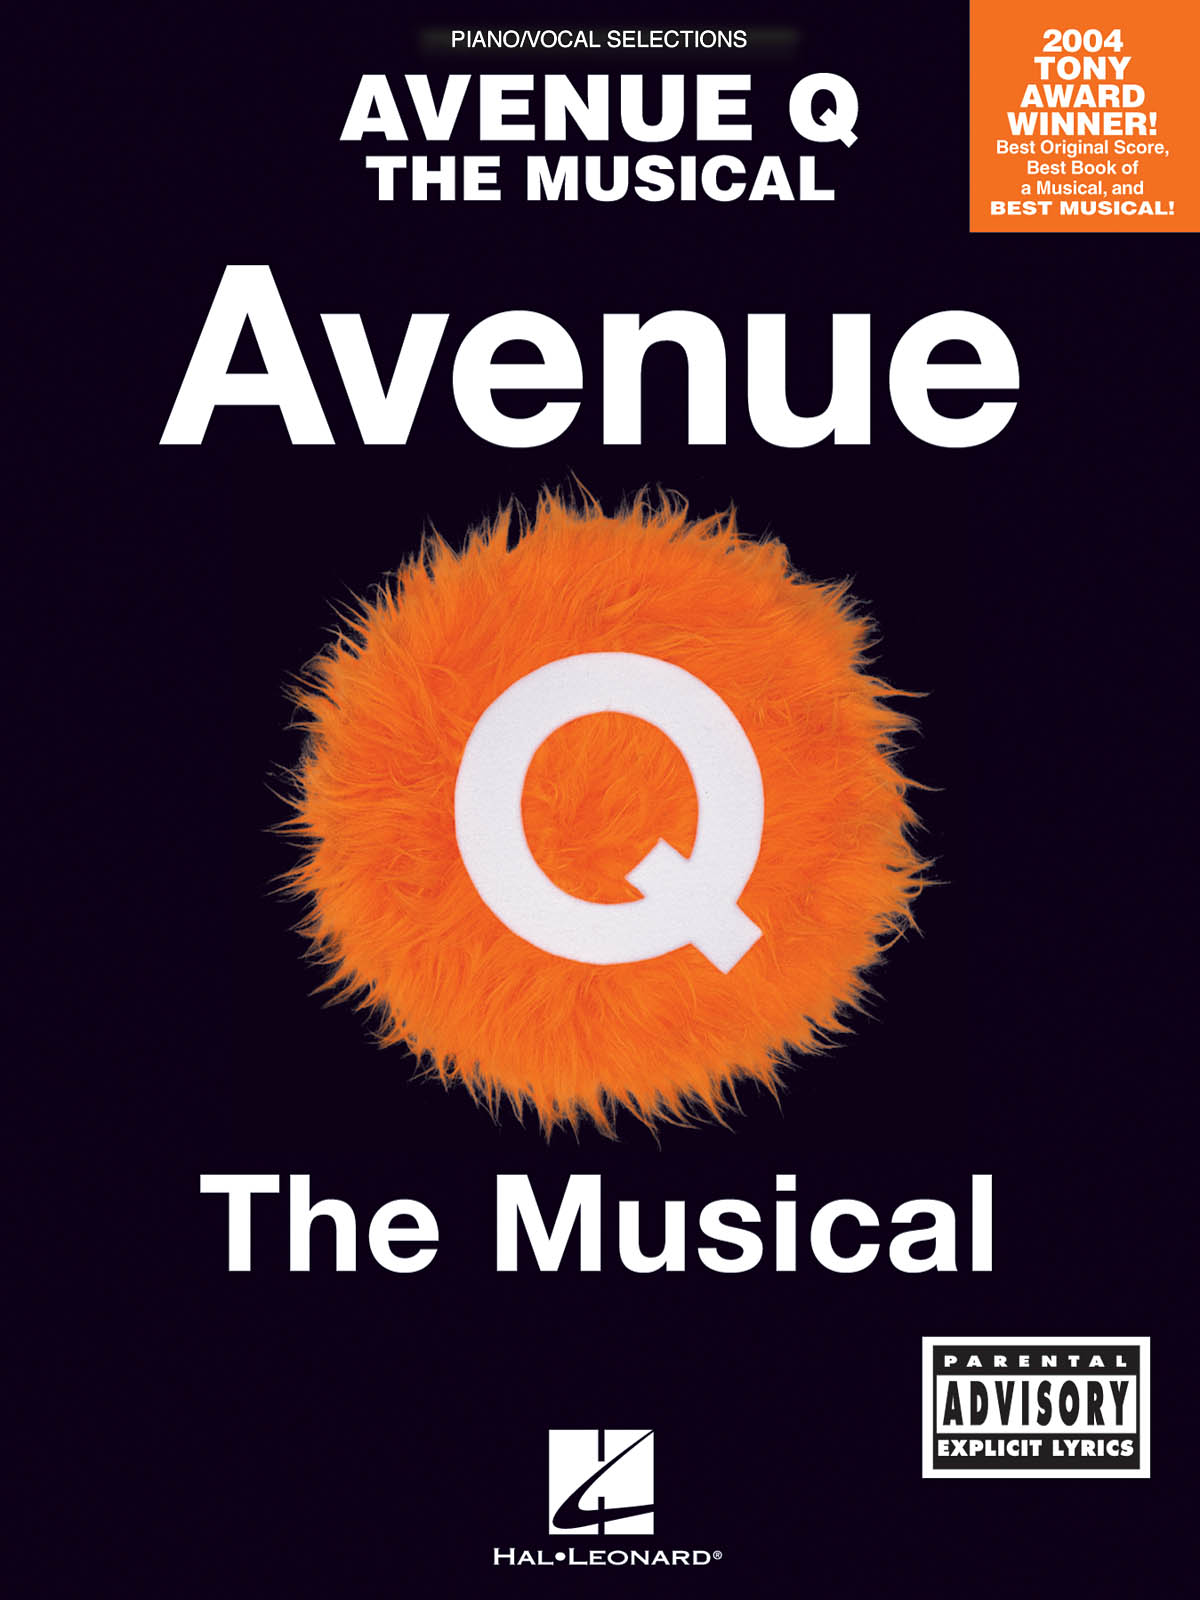 Avenue Q - The Musical